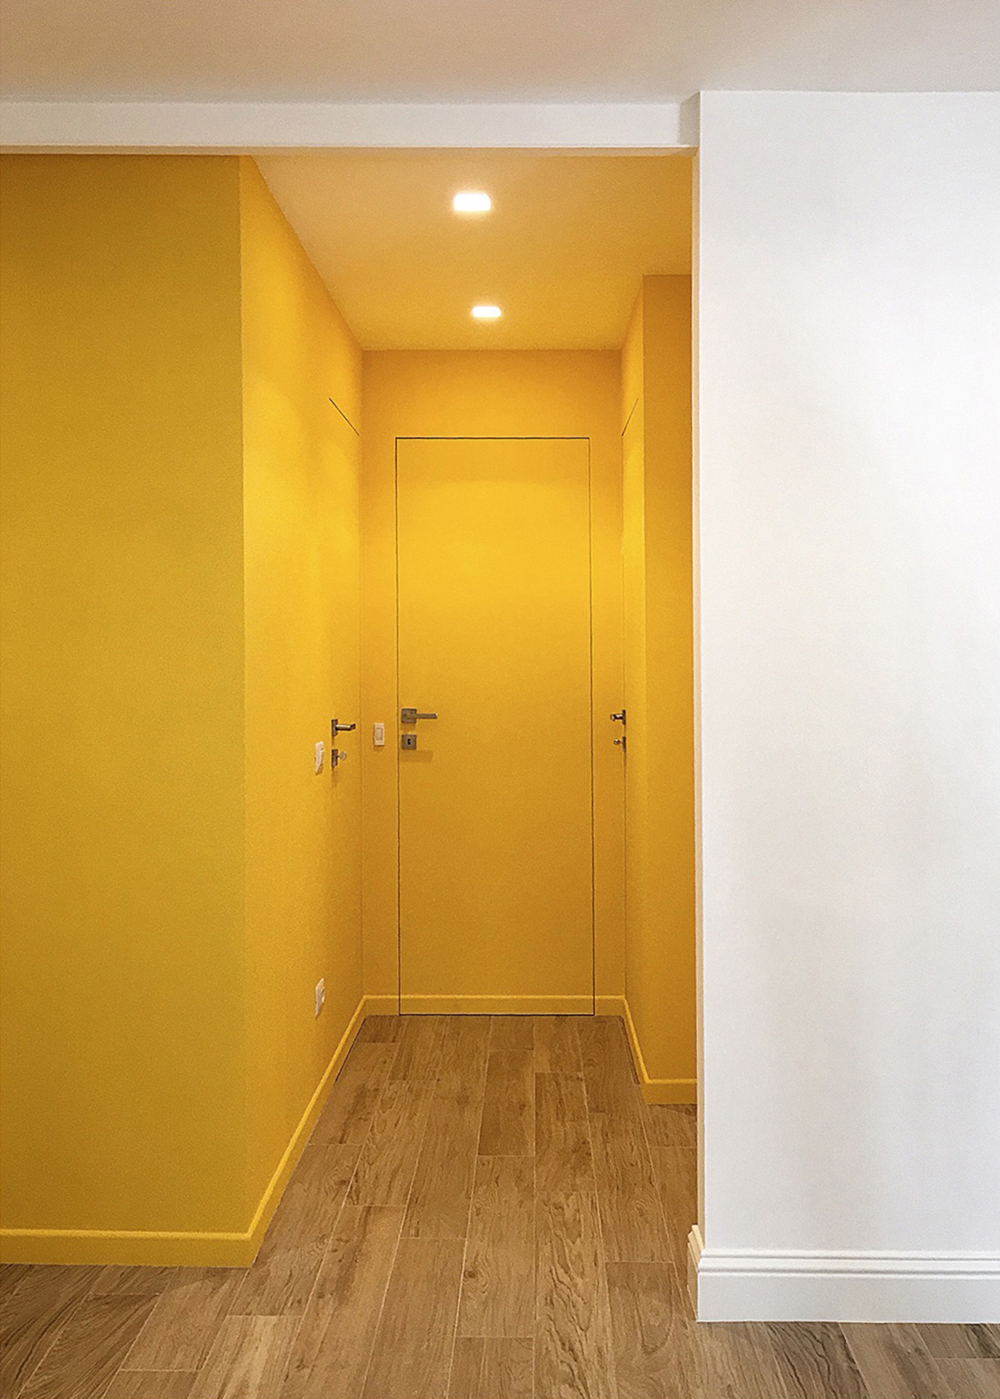 Bomori Architetti - Paint It Yellow!